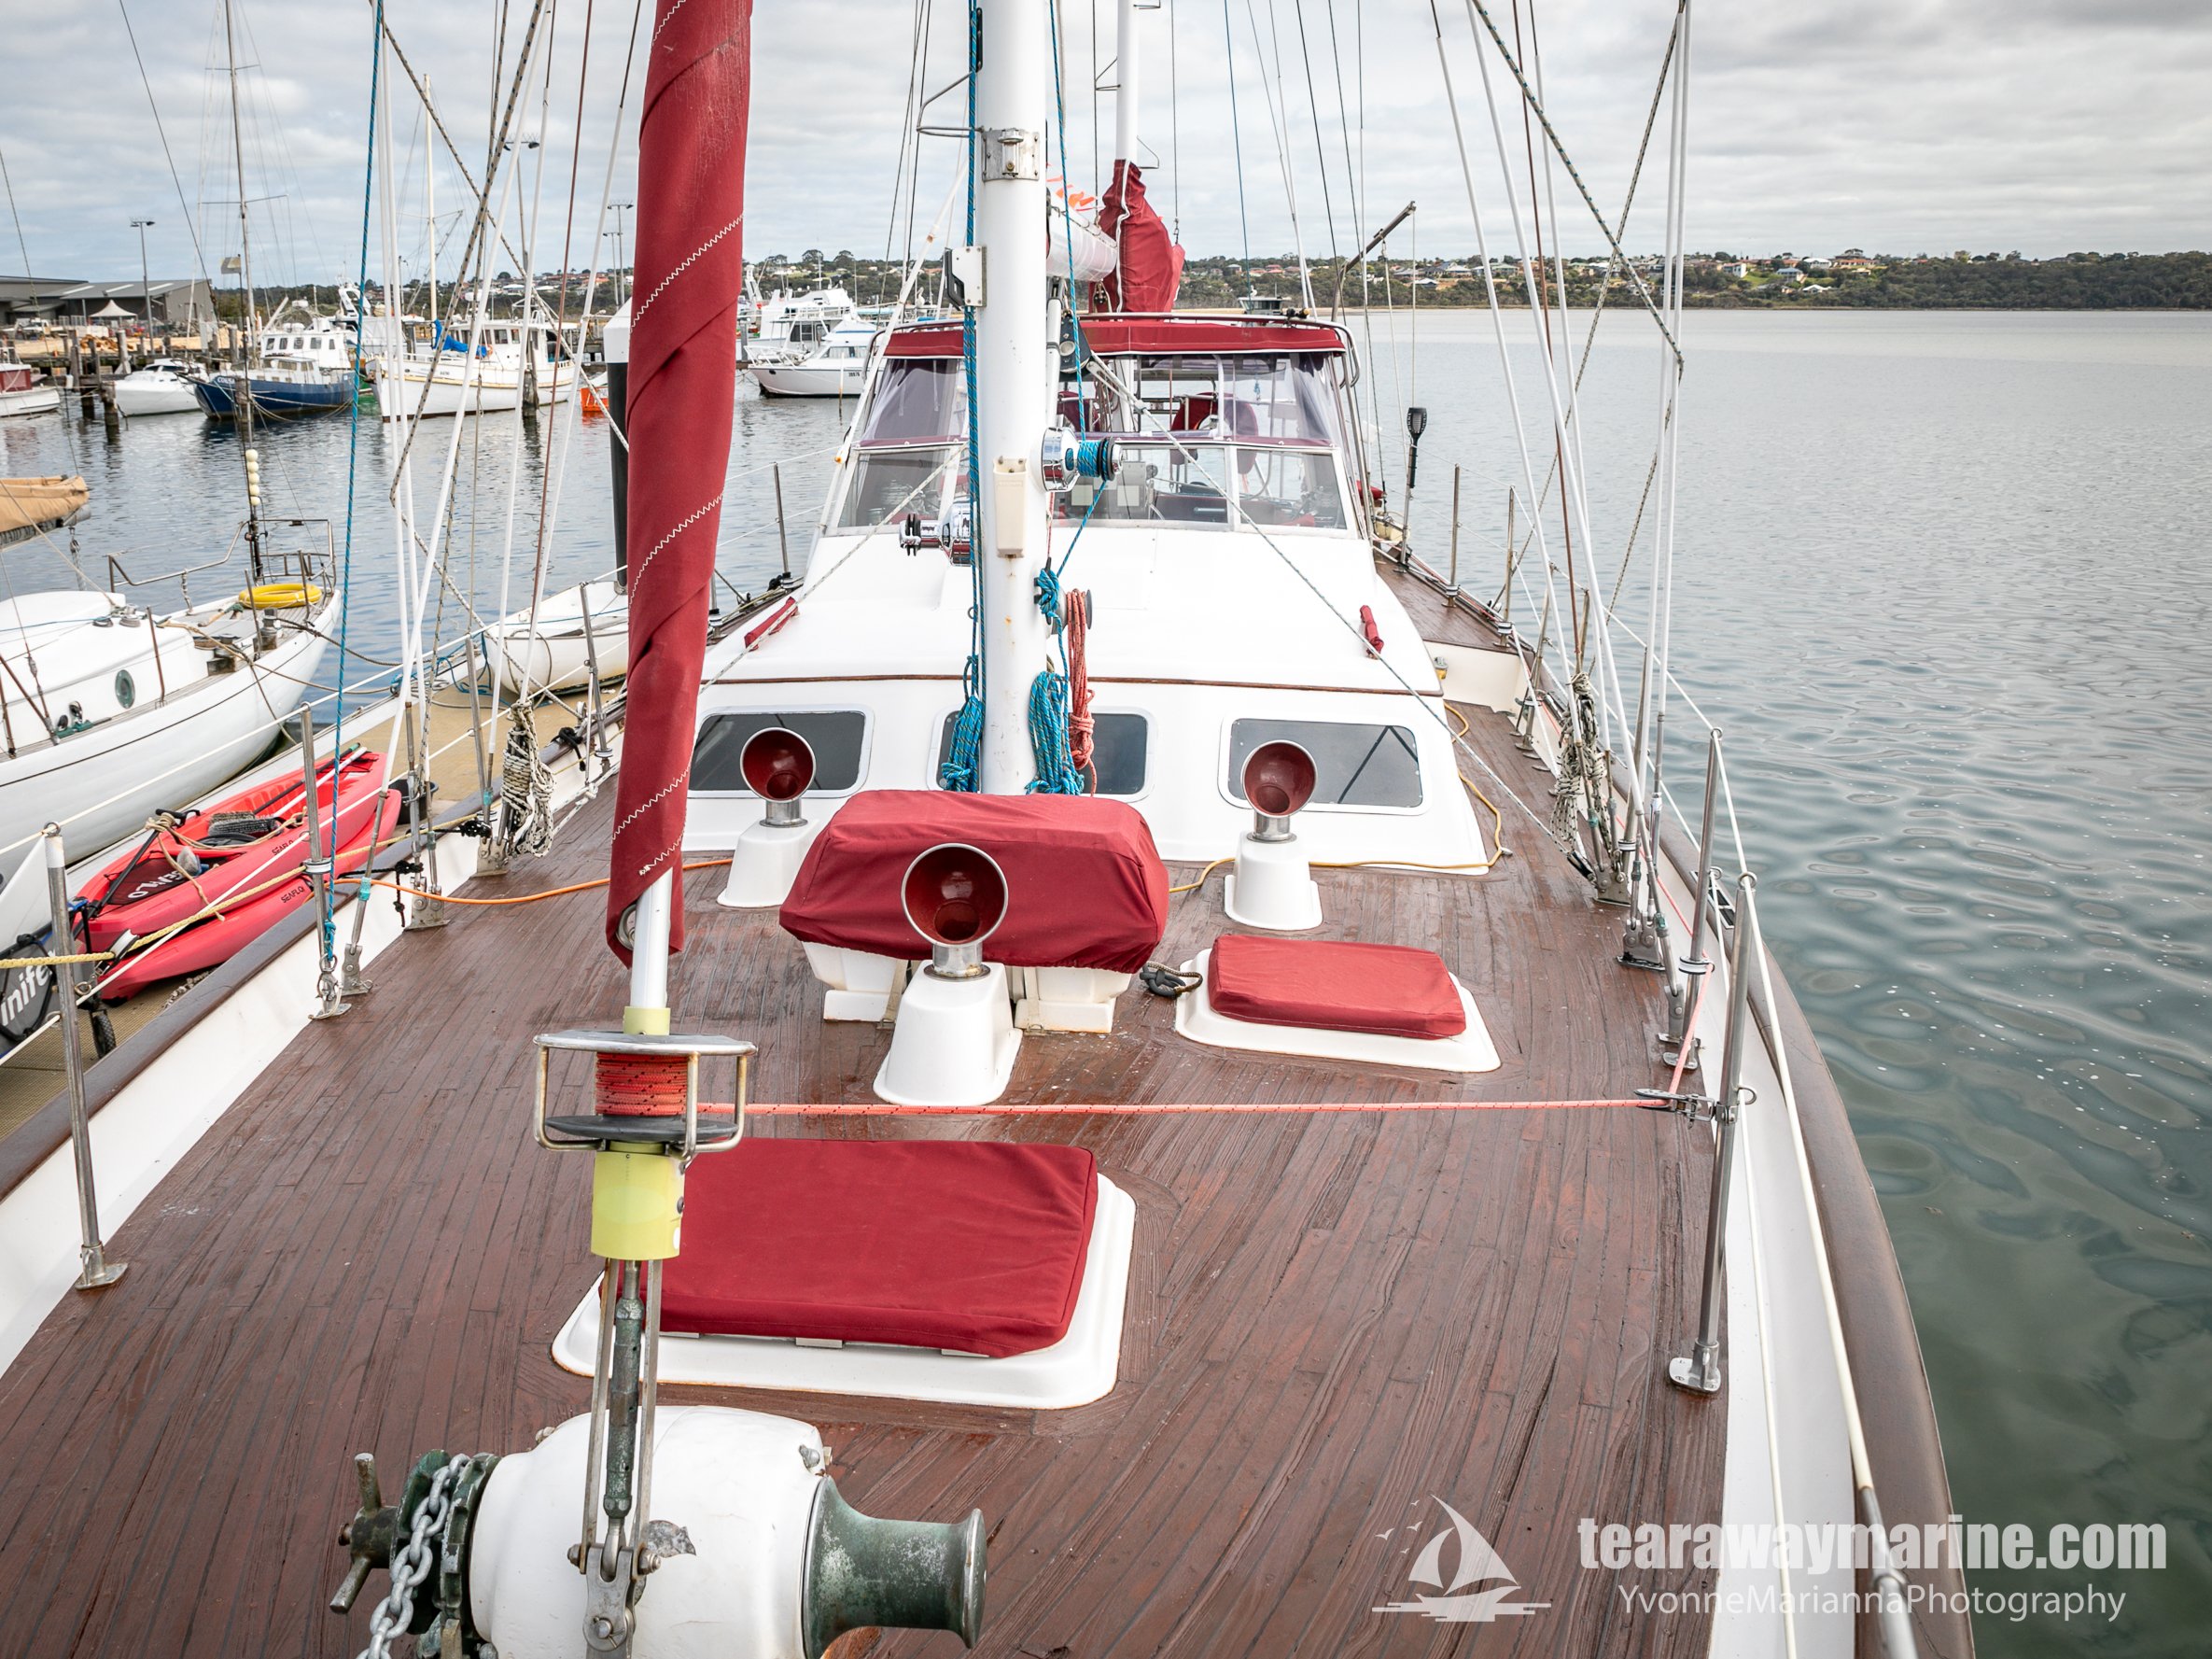 Calypso Yacht Tearaway Marine - Yvonne Marianna Photography-23.jpg